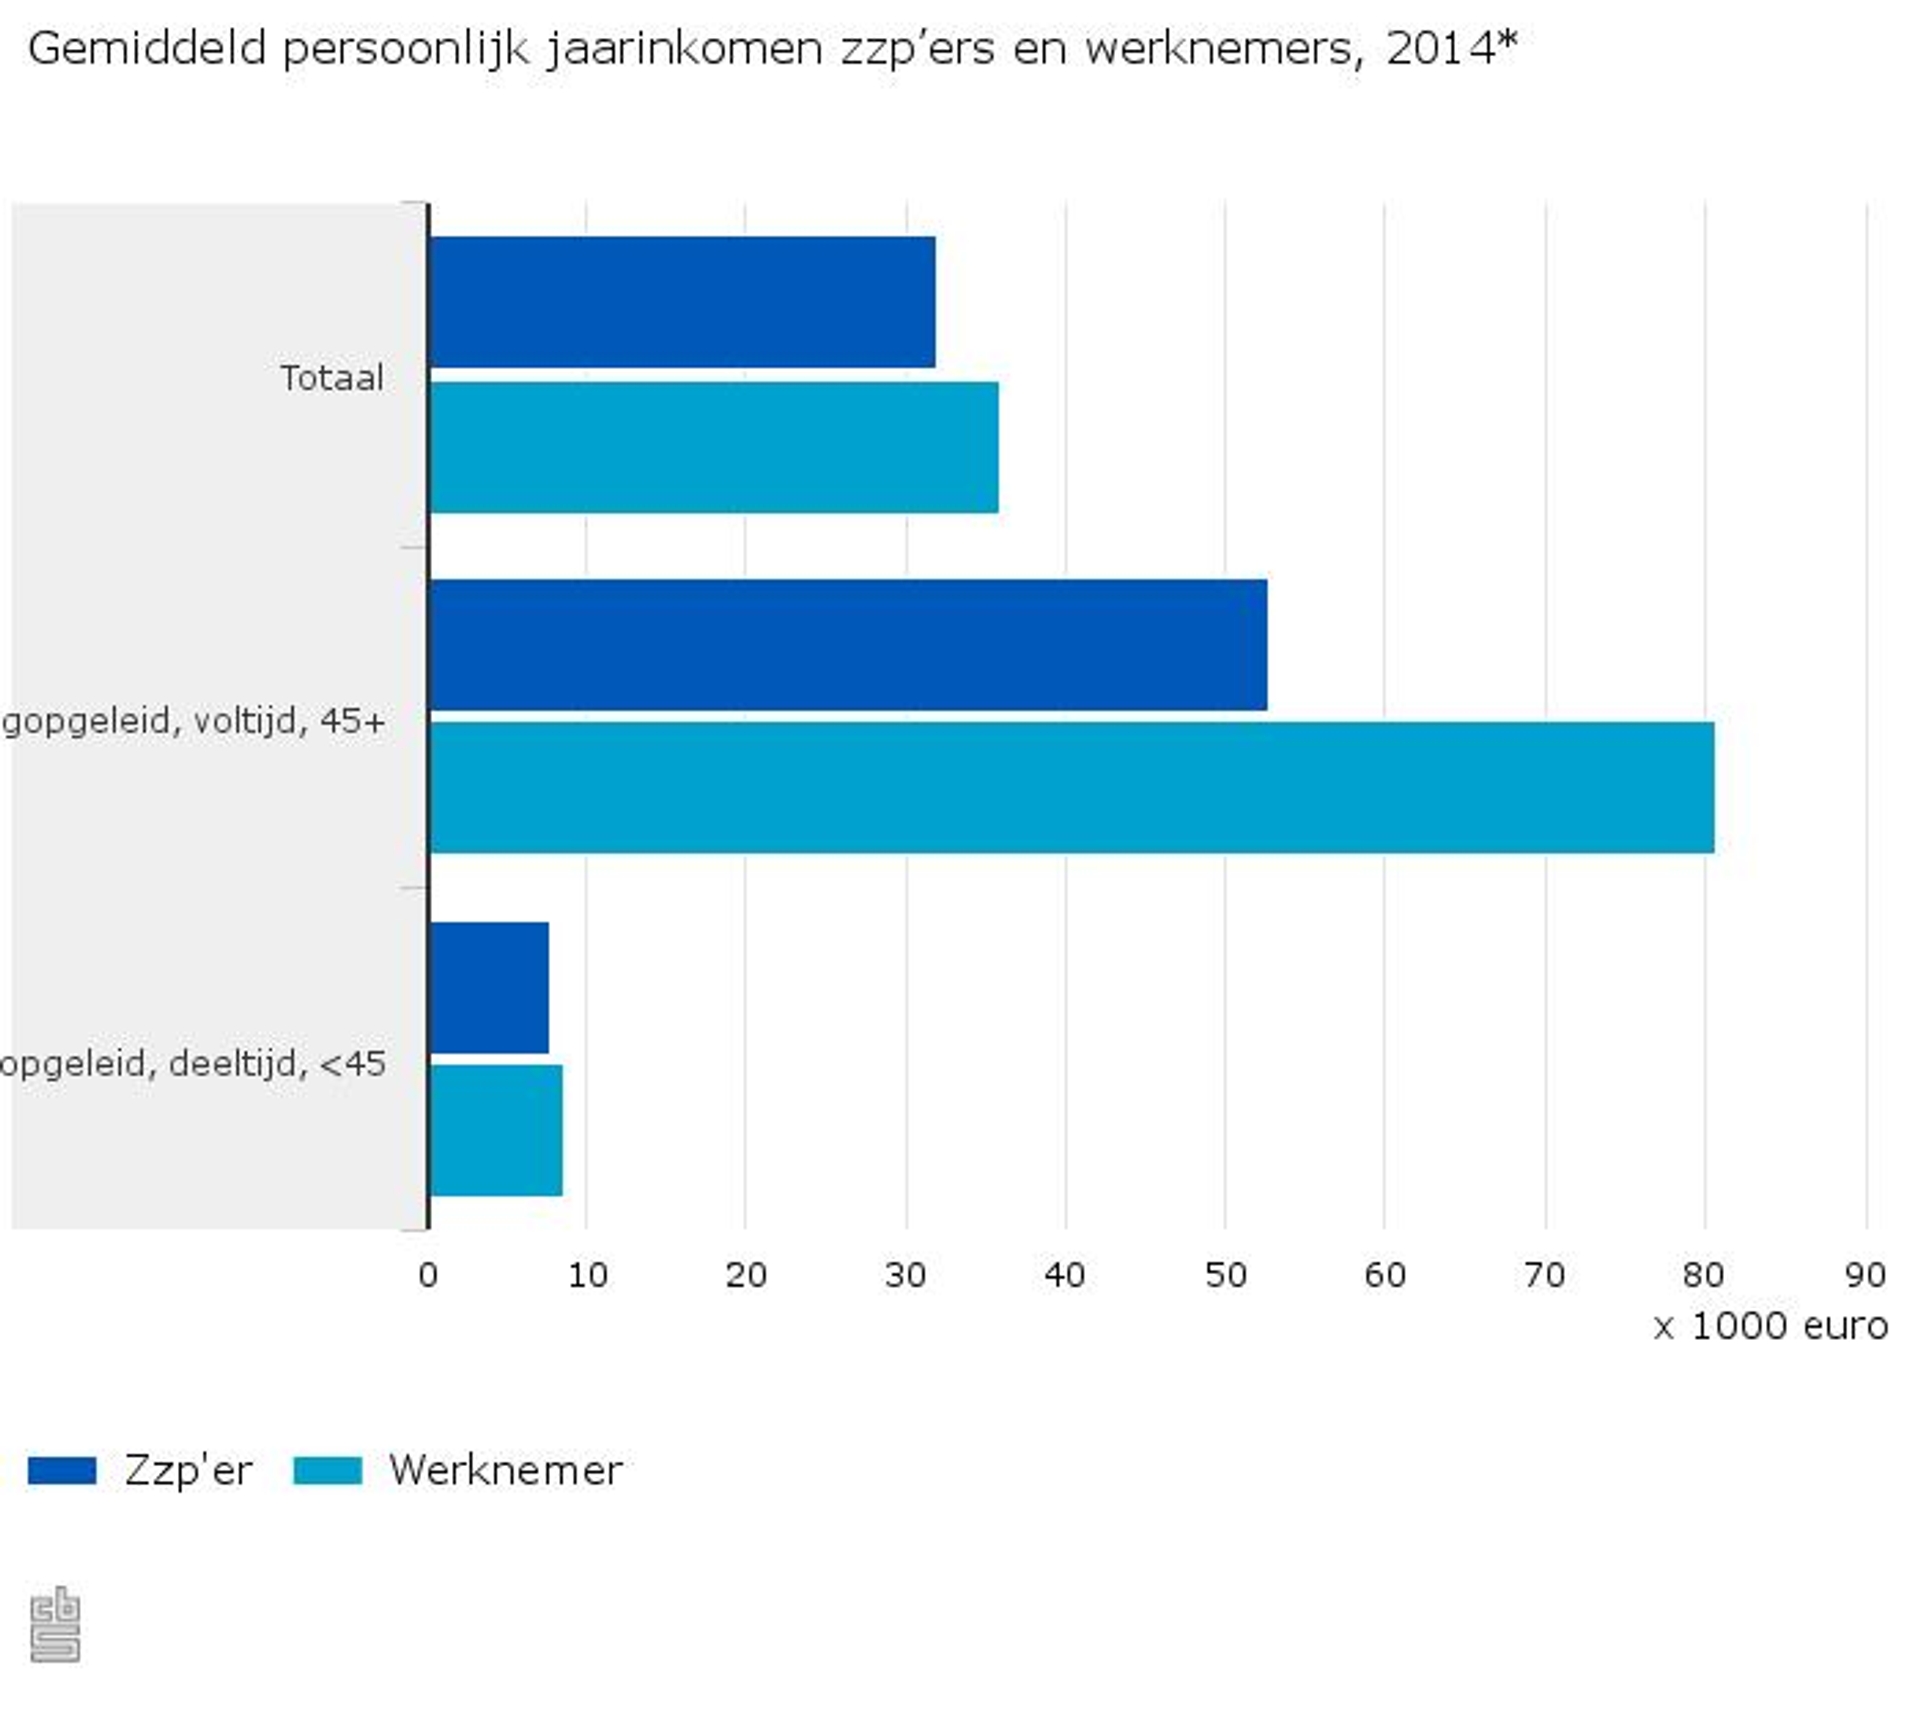 Gemiddeld-persoonlijk-jaarinkomen-zzpers-en-werknemers-2014-16-03-04